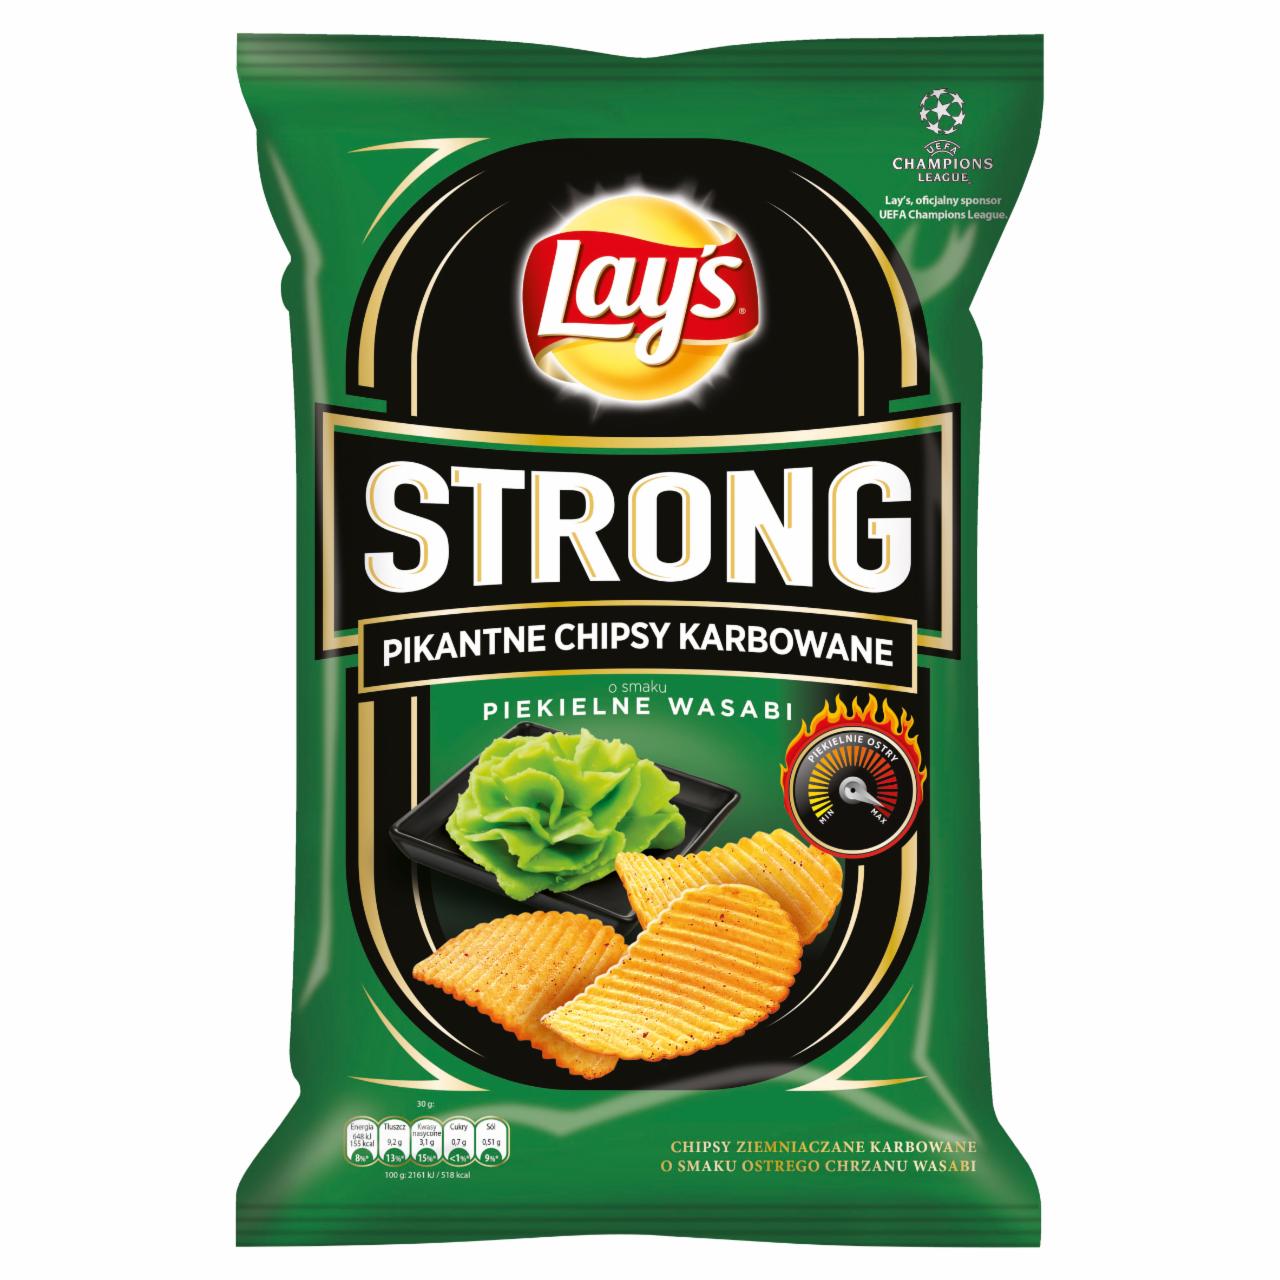 Zdjęcia - Lay's Strong Pikantne chipsy karbowane o smaku piekielne wasabi 140 g